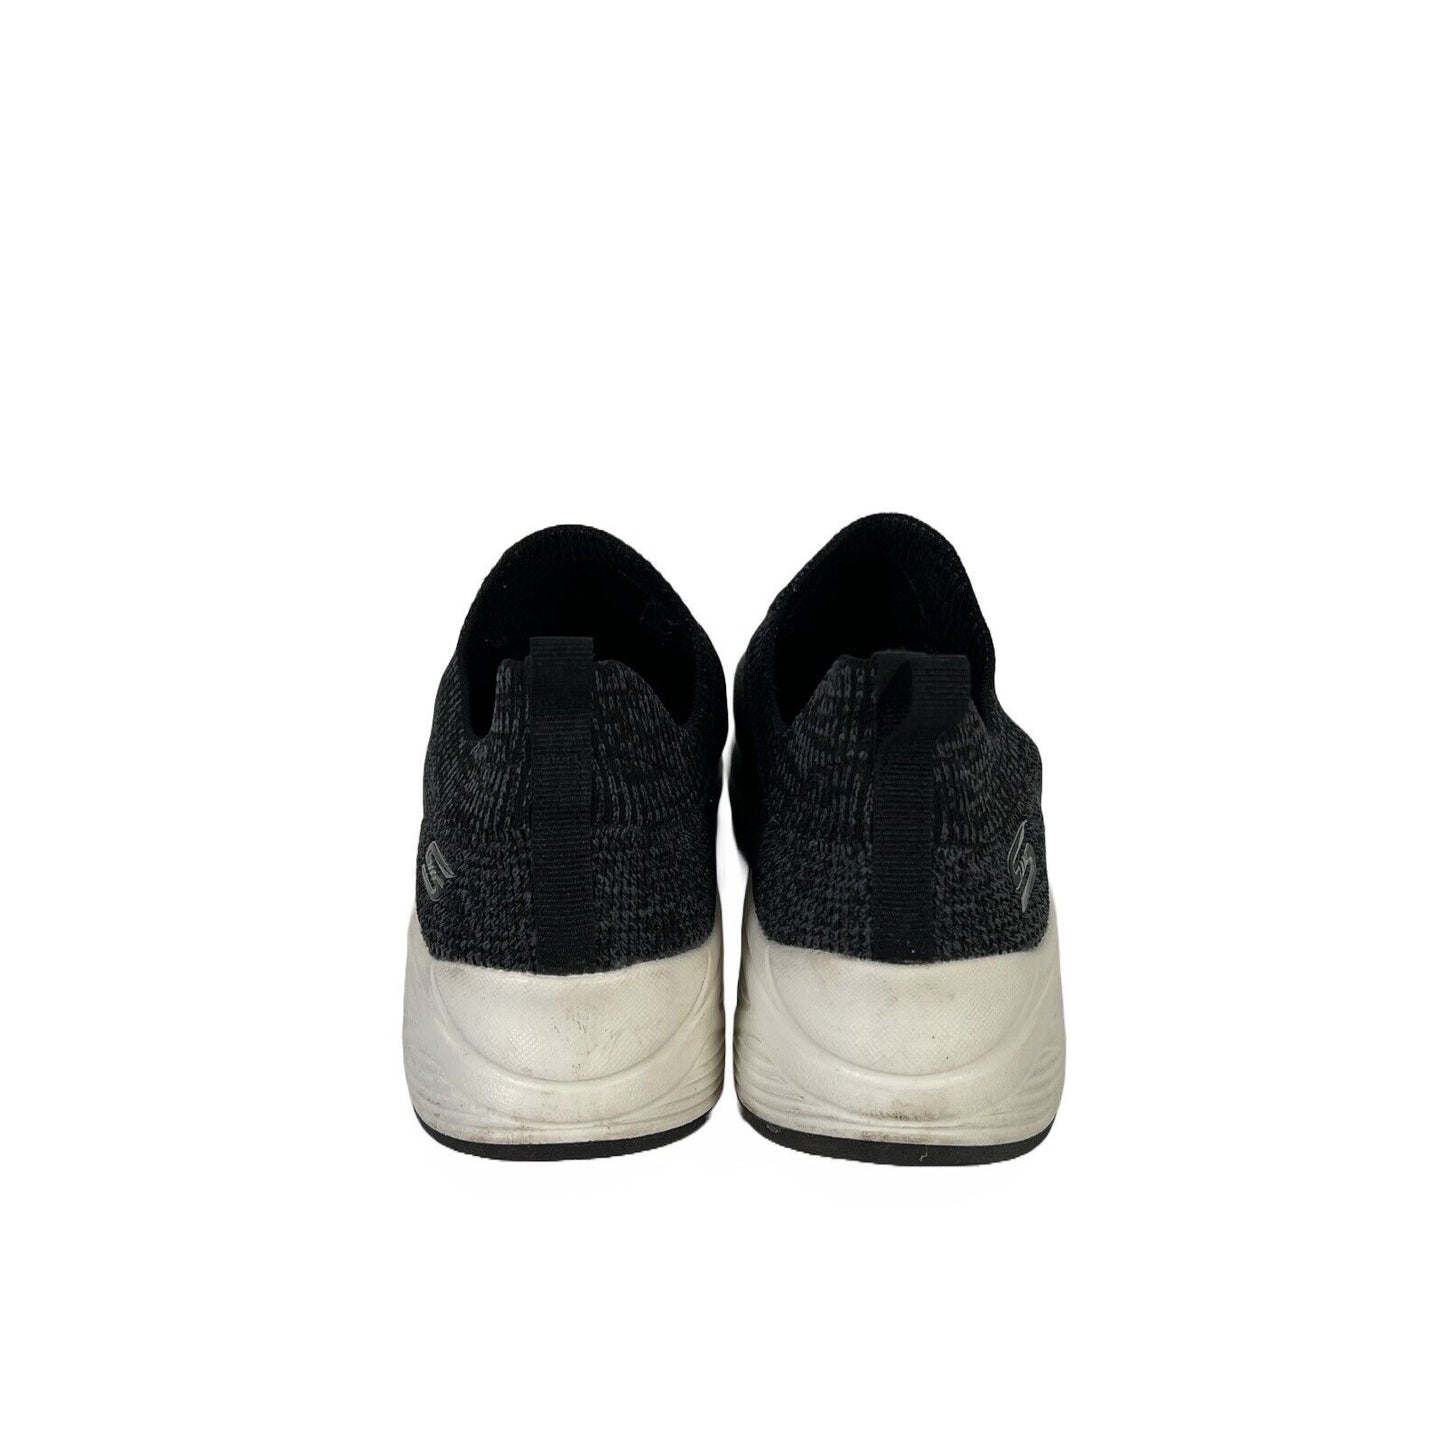 Skechers Bobs Women's Gray/Black Stretch Knit Sneakers - 8